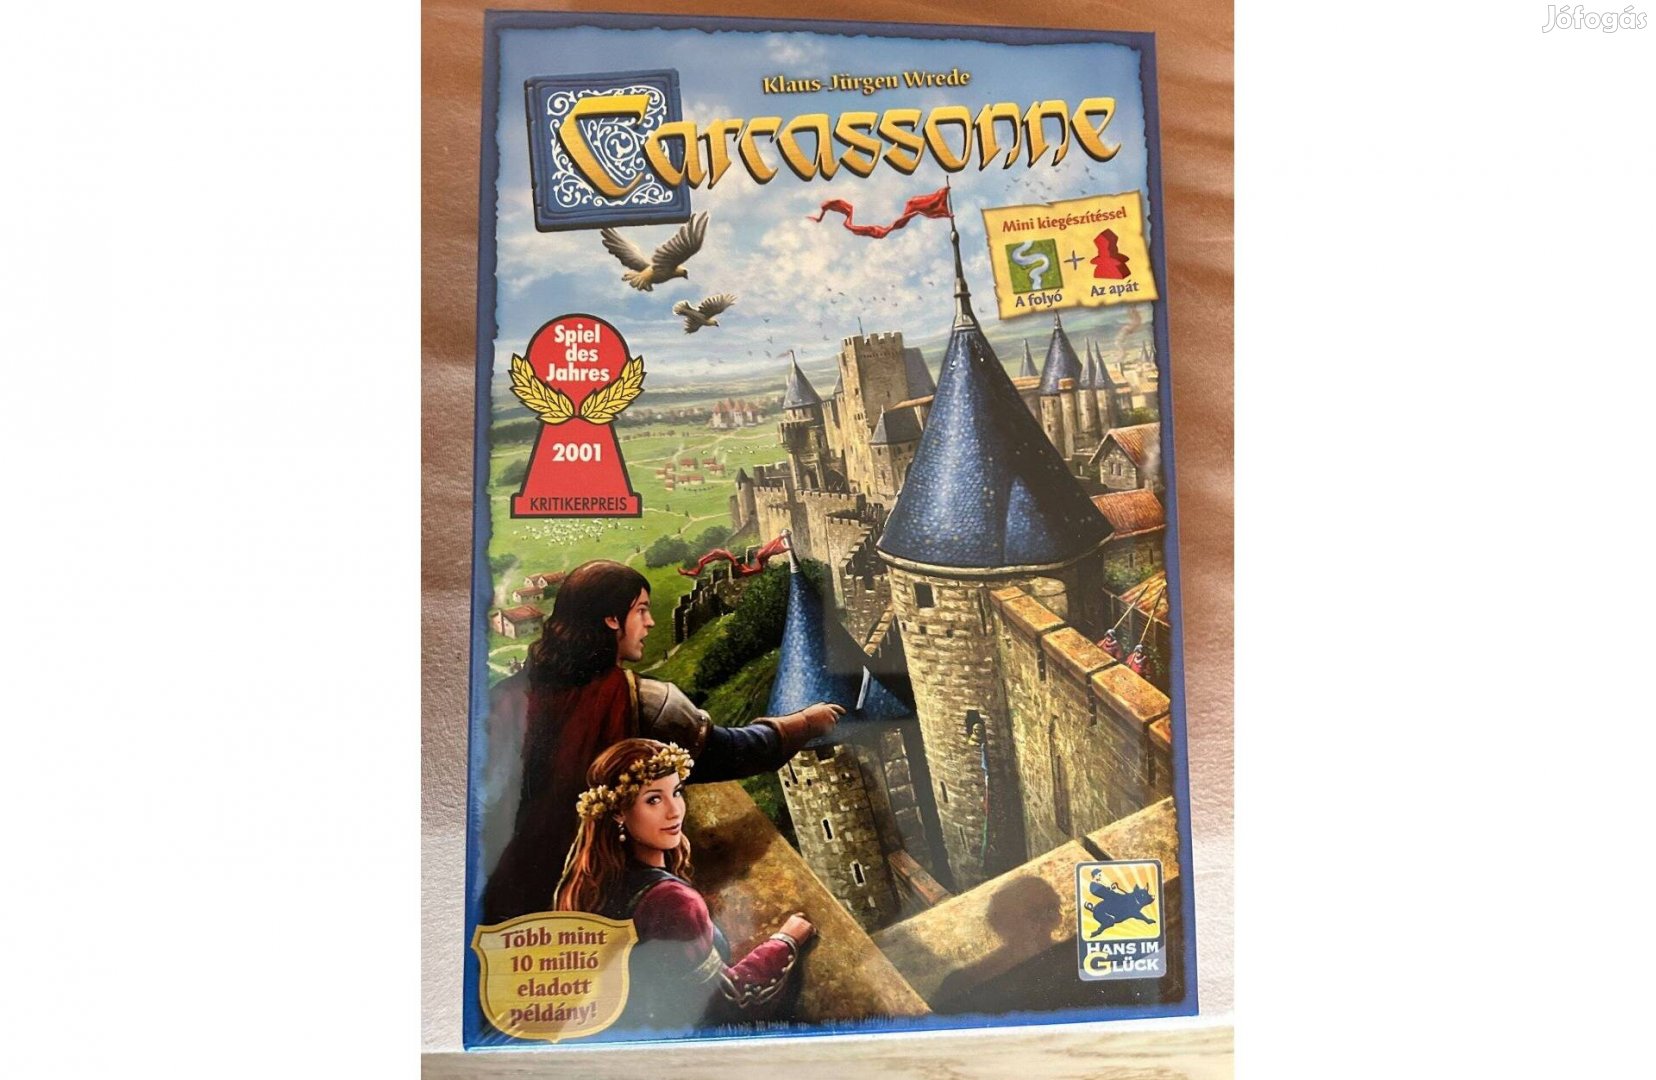 Carcassonne társasjáték bontatlan csomagolásban